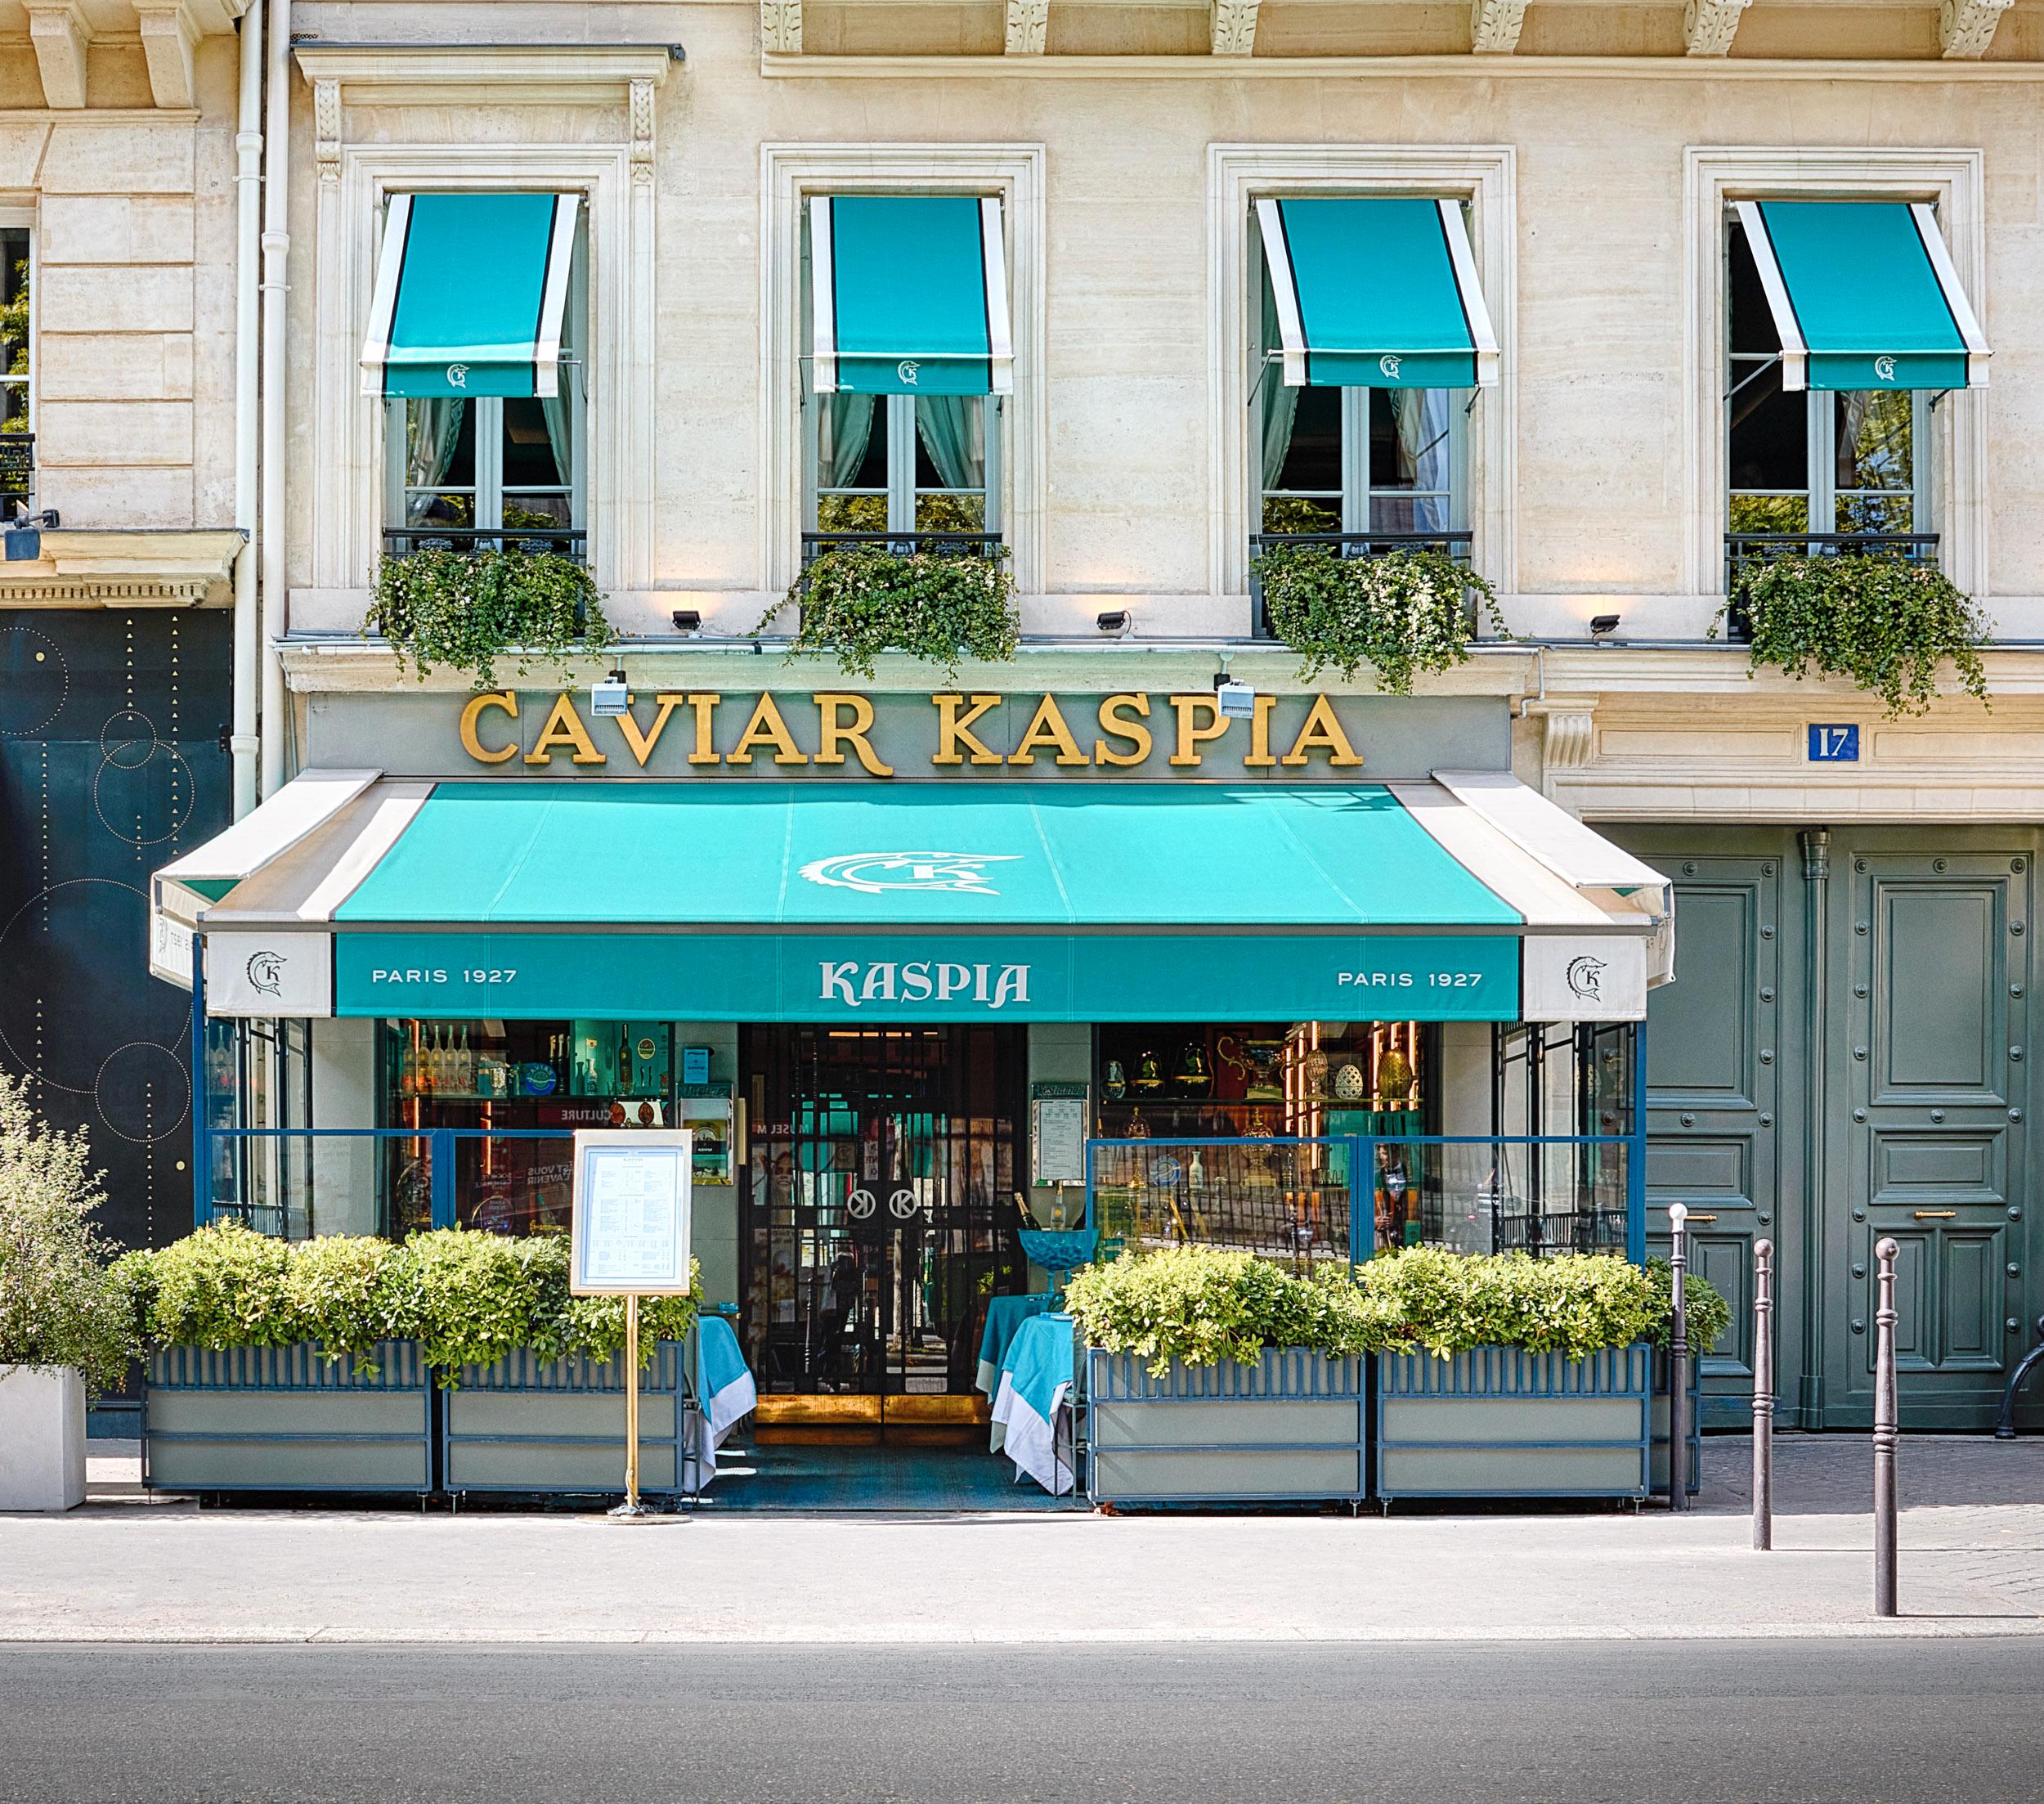 Paris-restauranten har vært en institusjon i byen i snart 100 år. I et lokale ved siden av ligger restauranten Maison de la Truffe, som MacChron-paret kjøpte i 2007.